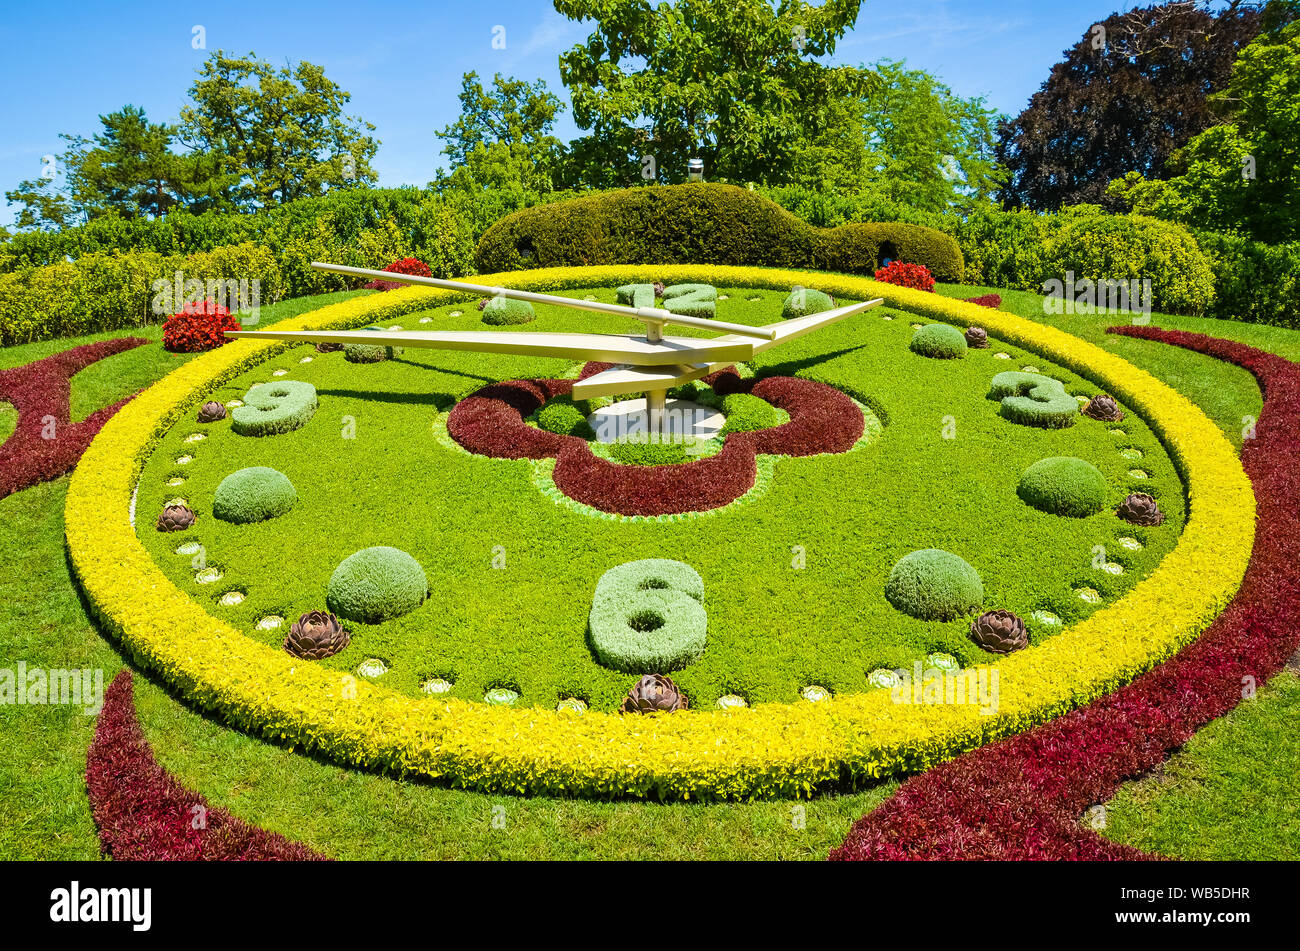 Reloj de Flores en Ginebra, Suiza. L'horloge fleurie en francés, reloj de flores al aire libre situado en el lado occidental del parque Jardin Anglais. Creado en 1955 como un símbolo de la ciudad de relojeros. Foto de stock